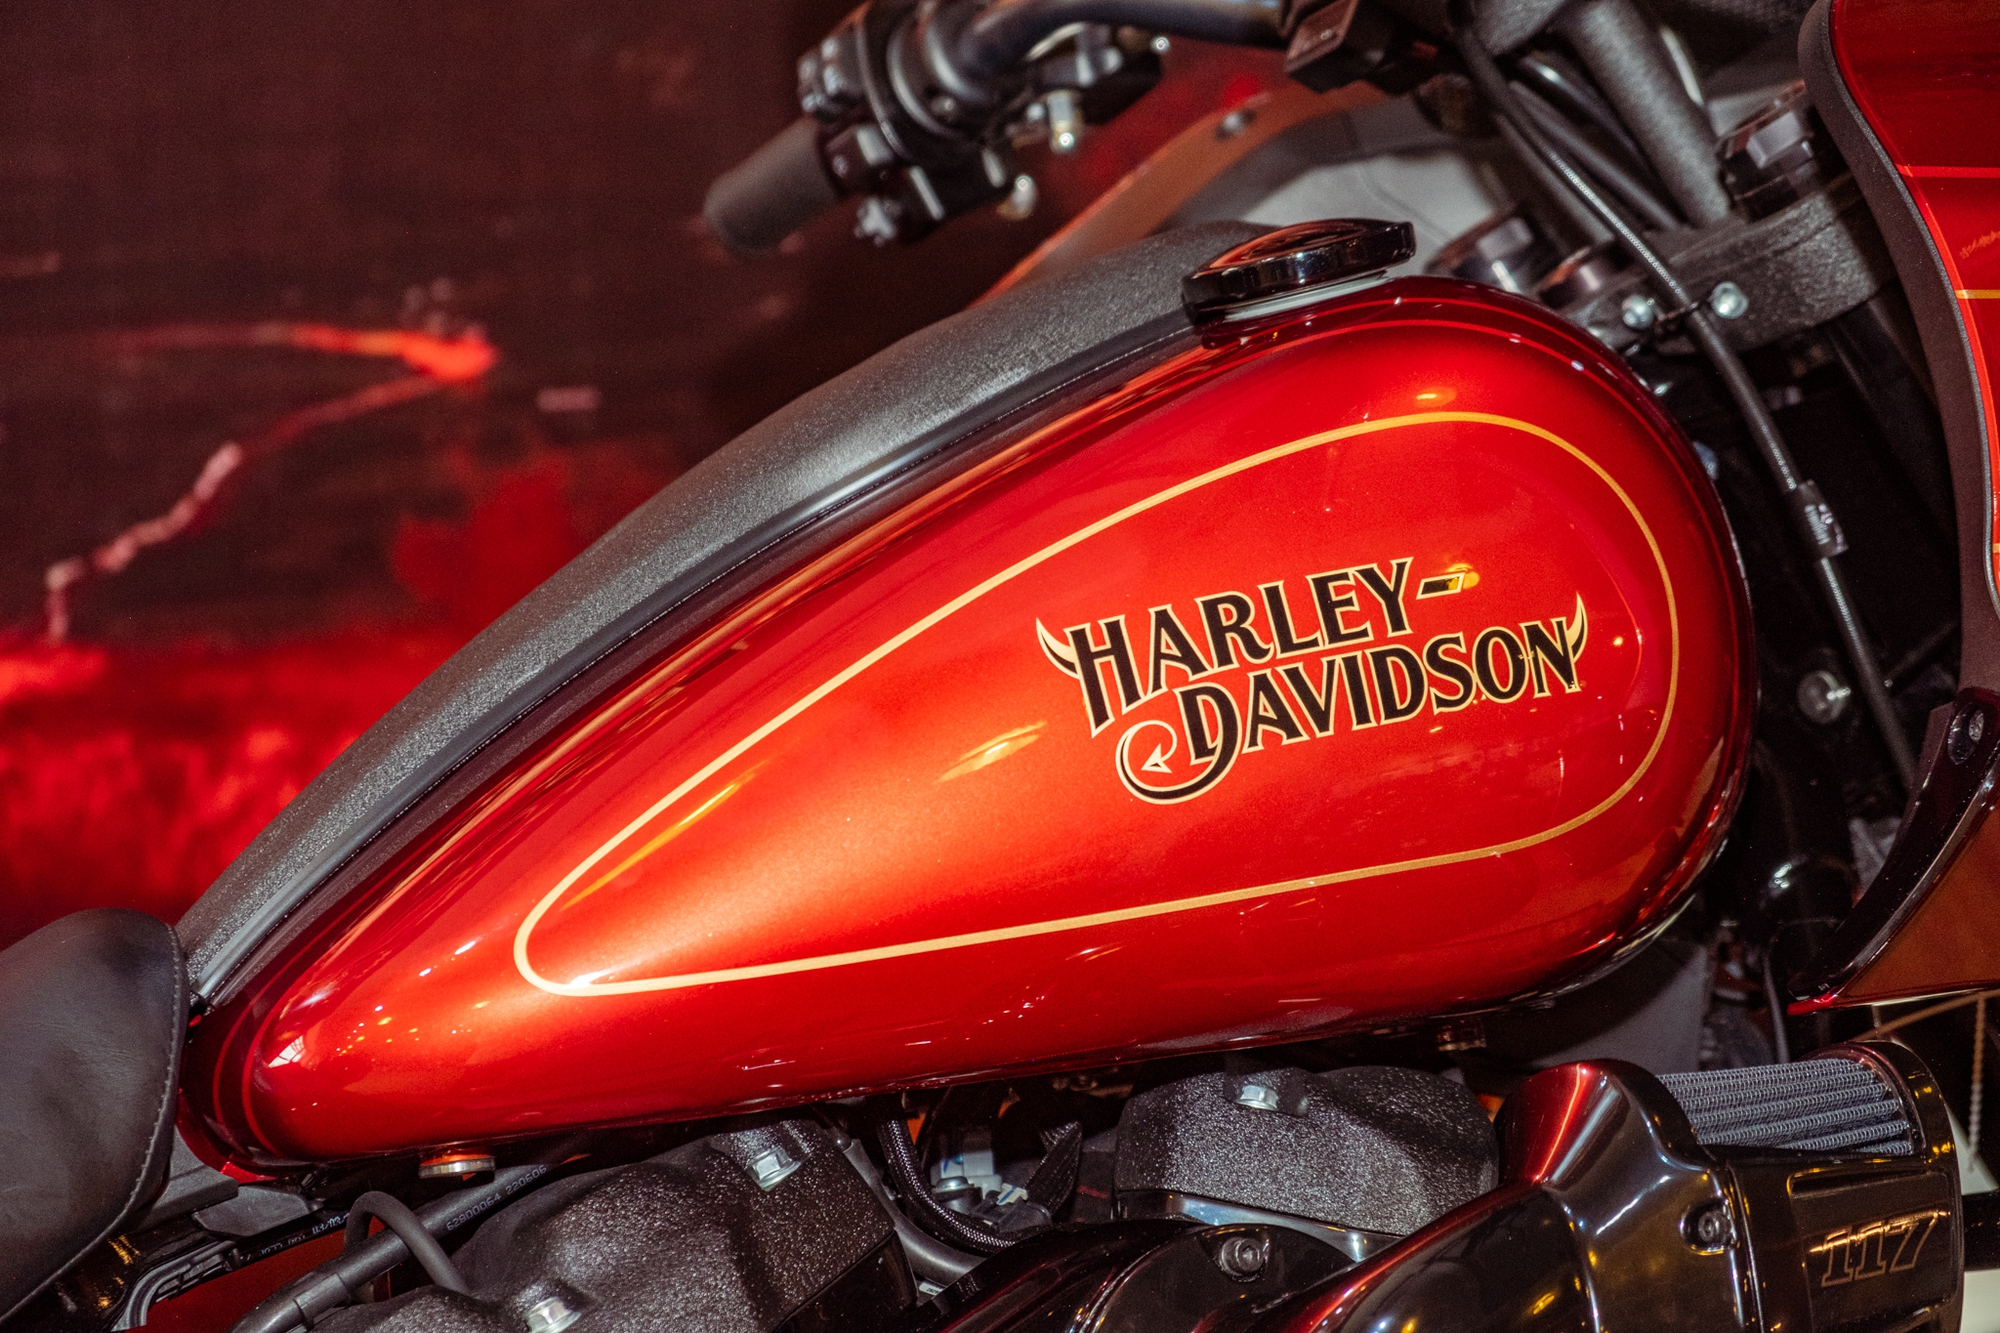 Chiêm ngưỡng lớp sơn 200 triệu đồng trên Harley-Davidson - Ảnh 4.